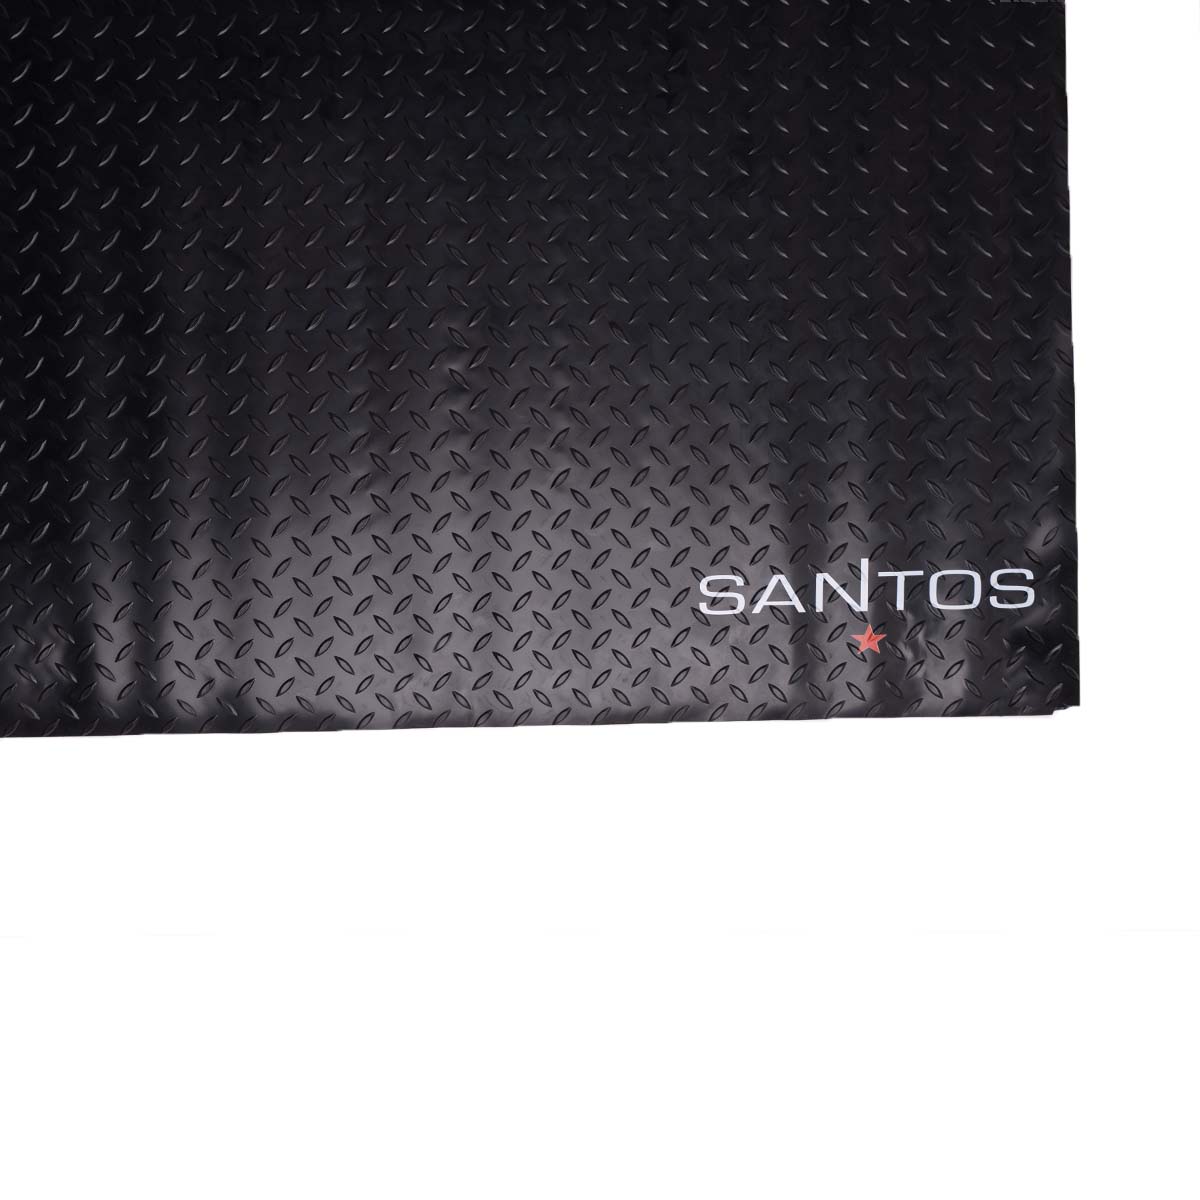 SANTOS Grillmatte Bodenschutz 169 x 100 cm